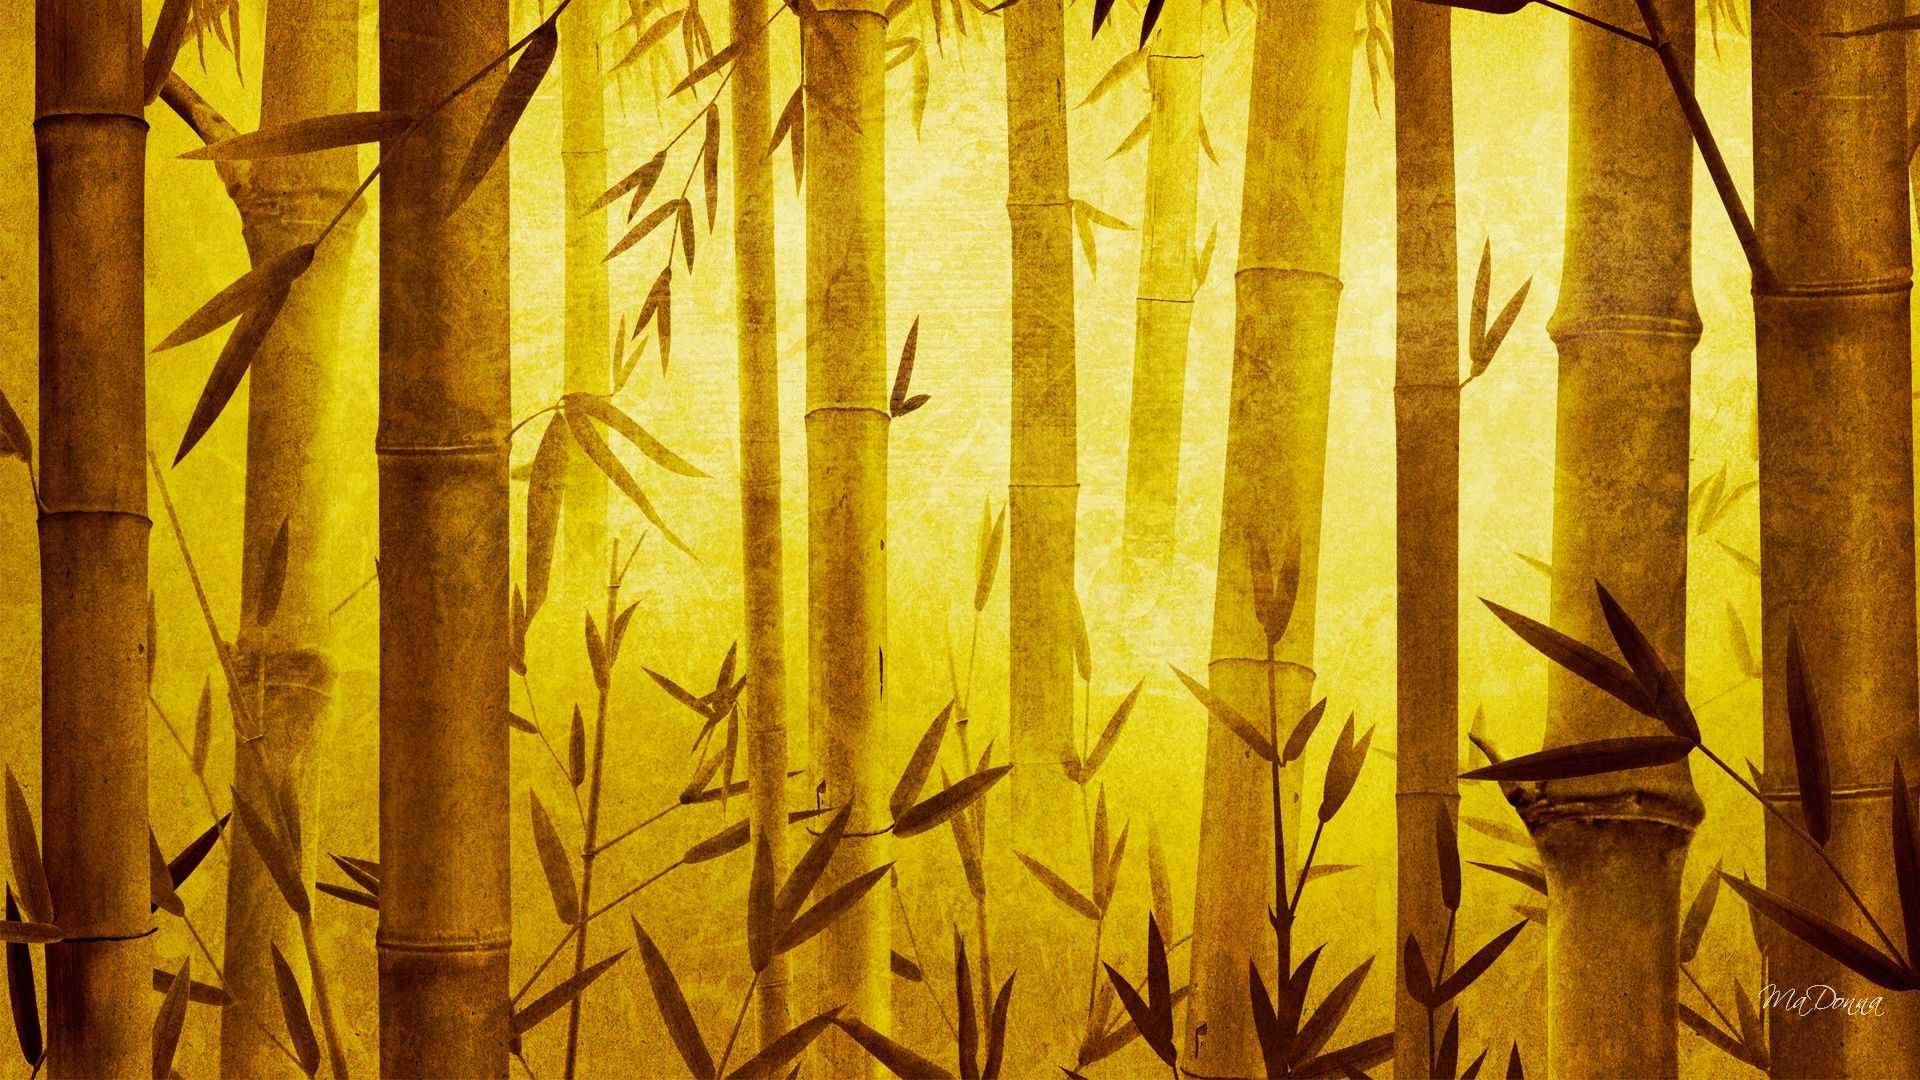 Japanese Background Bamboo